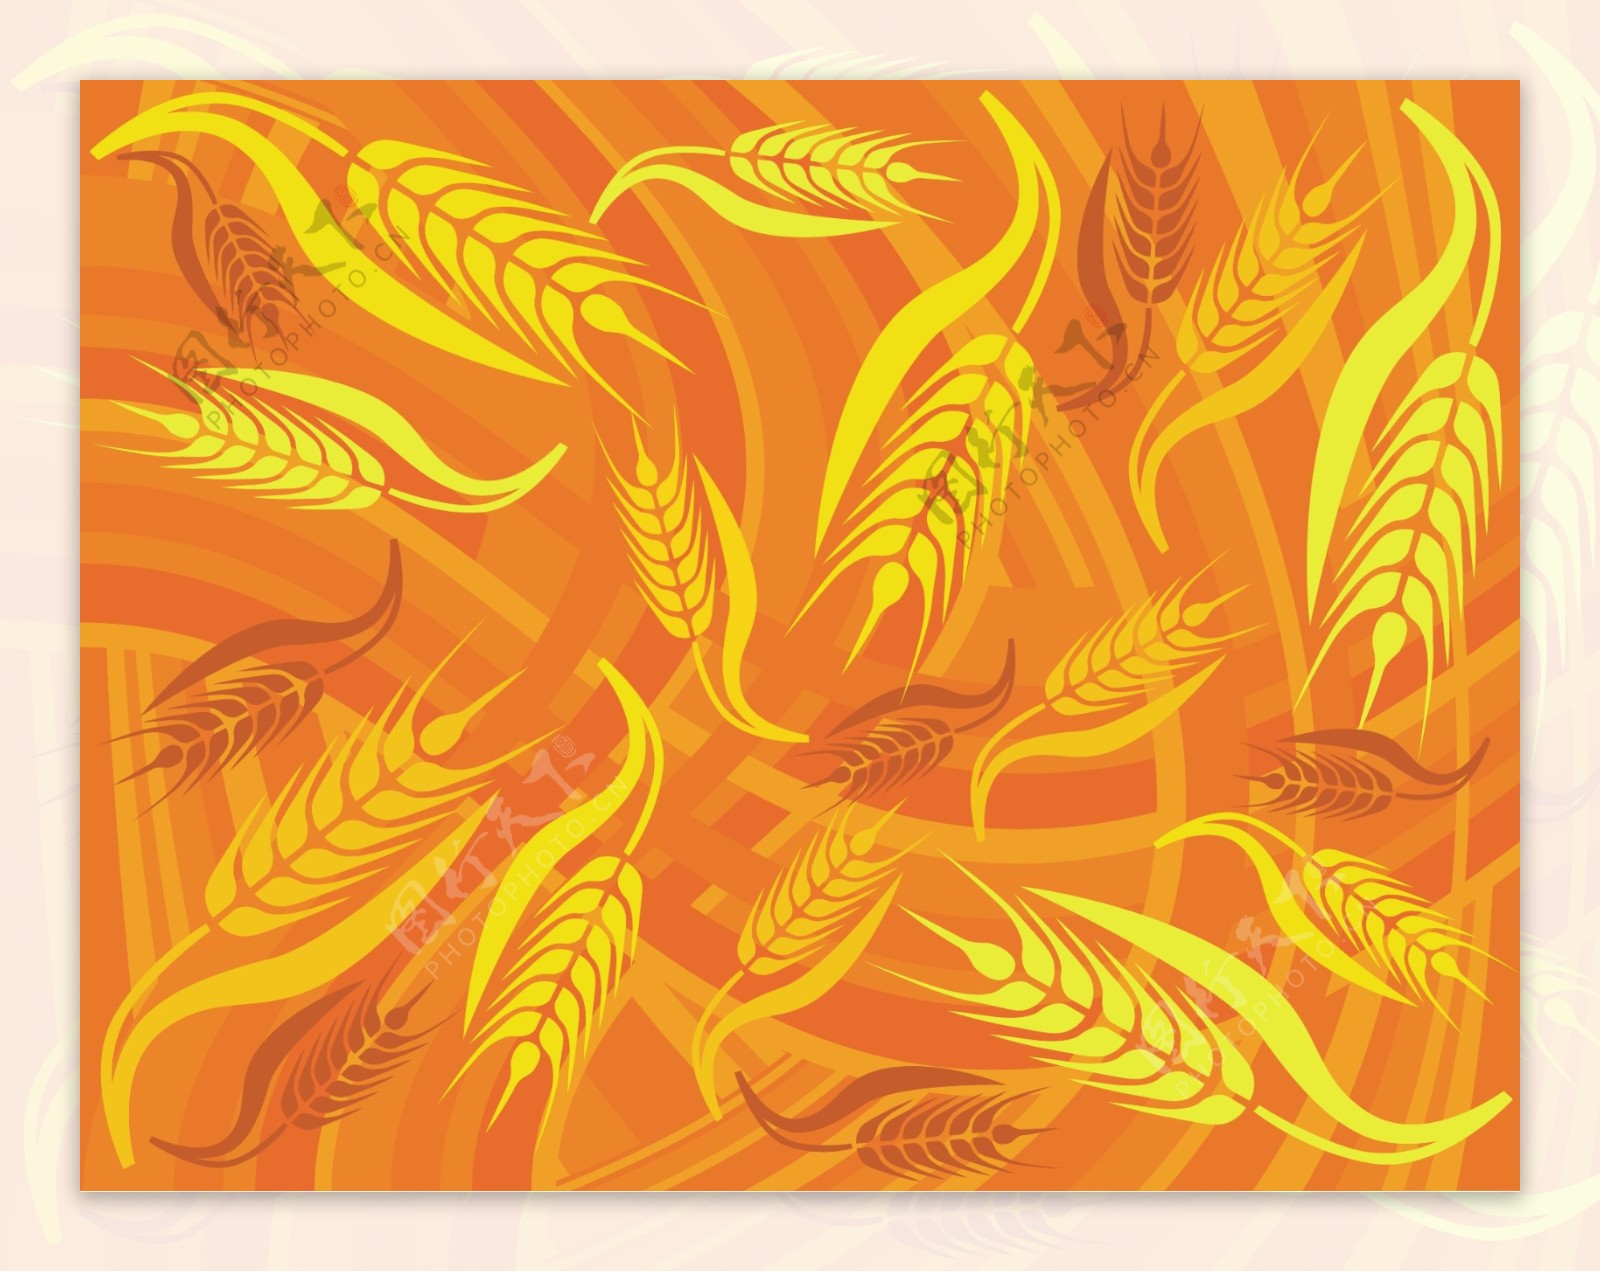 美丽的金色的小麦背景矢量素材